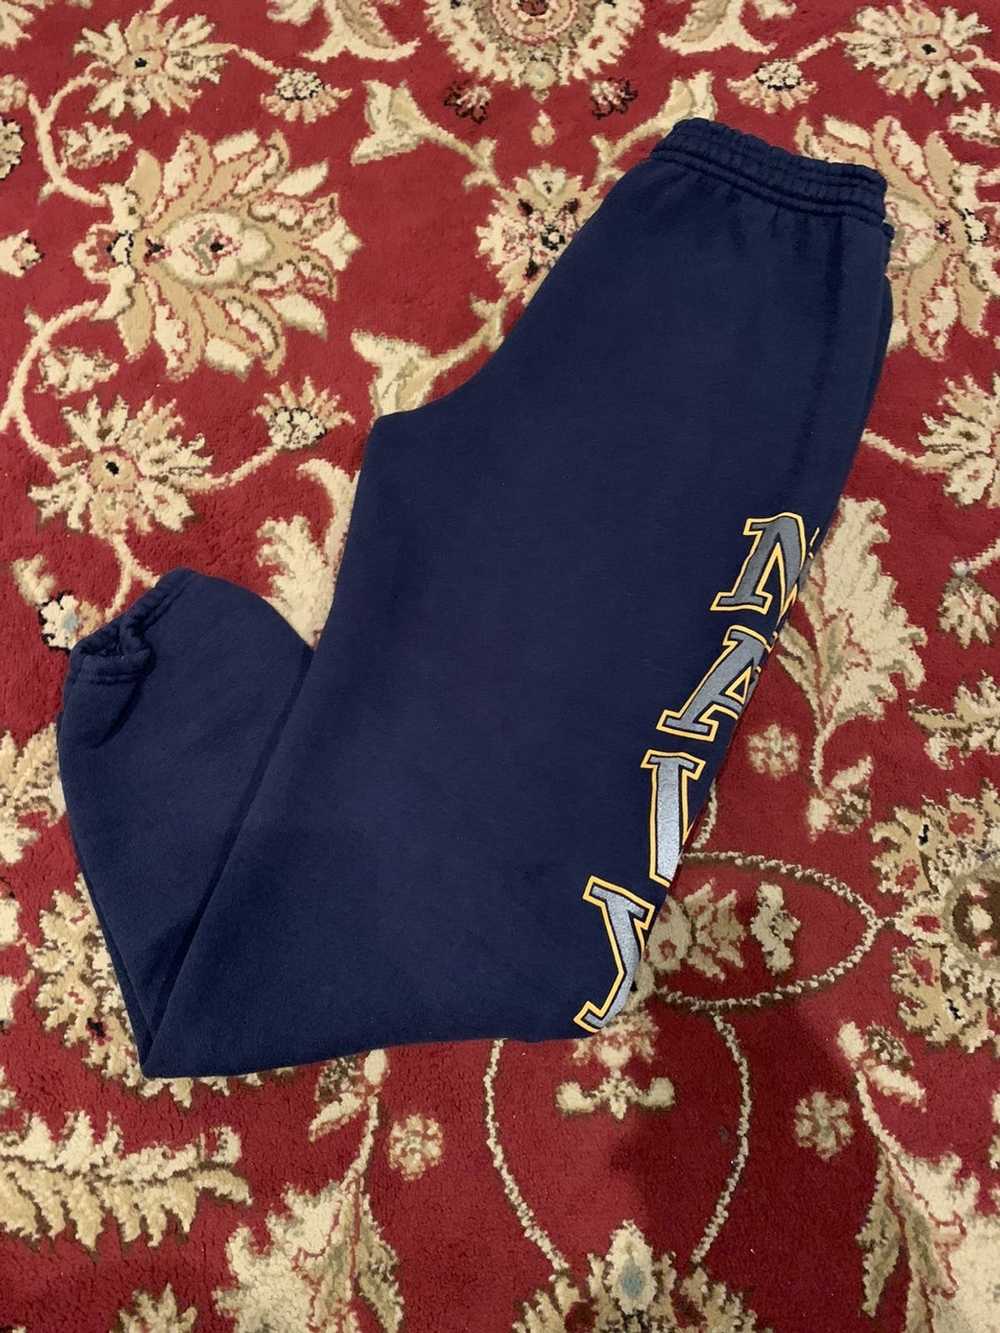 Vintage Vintage Us Navy sweatpants - image 5